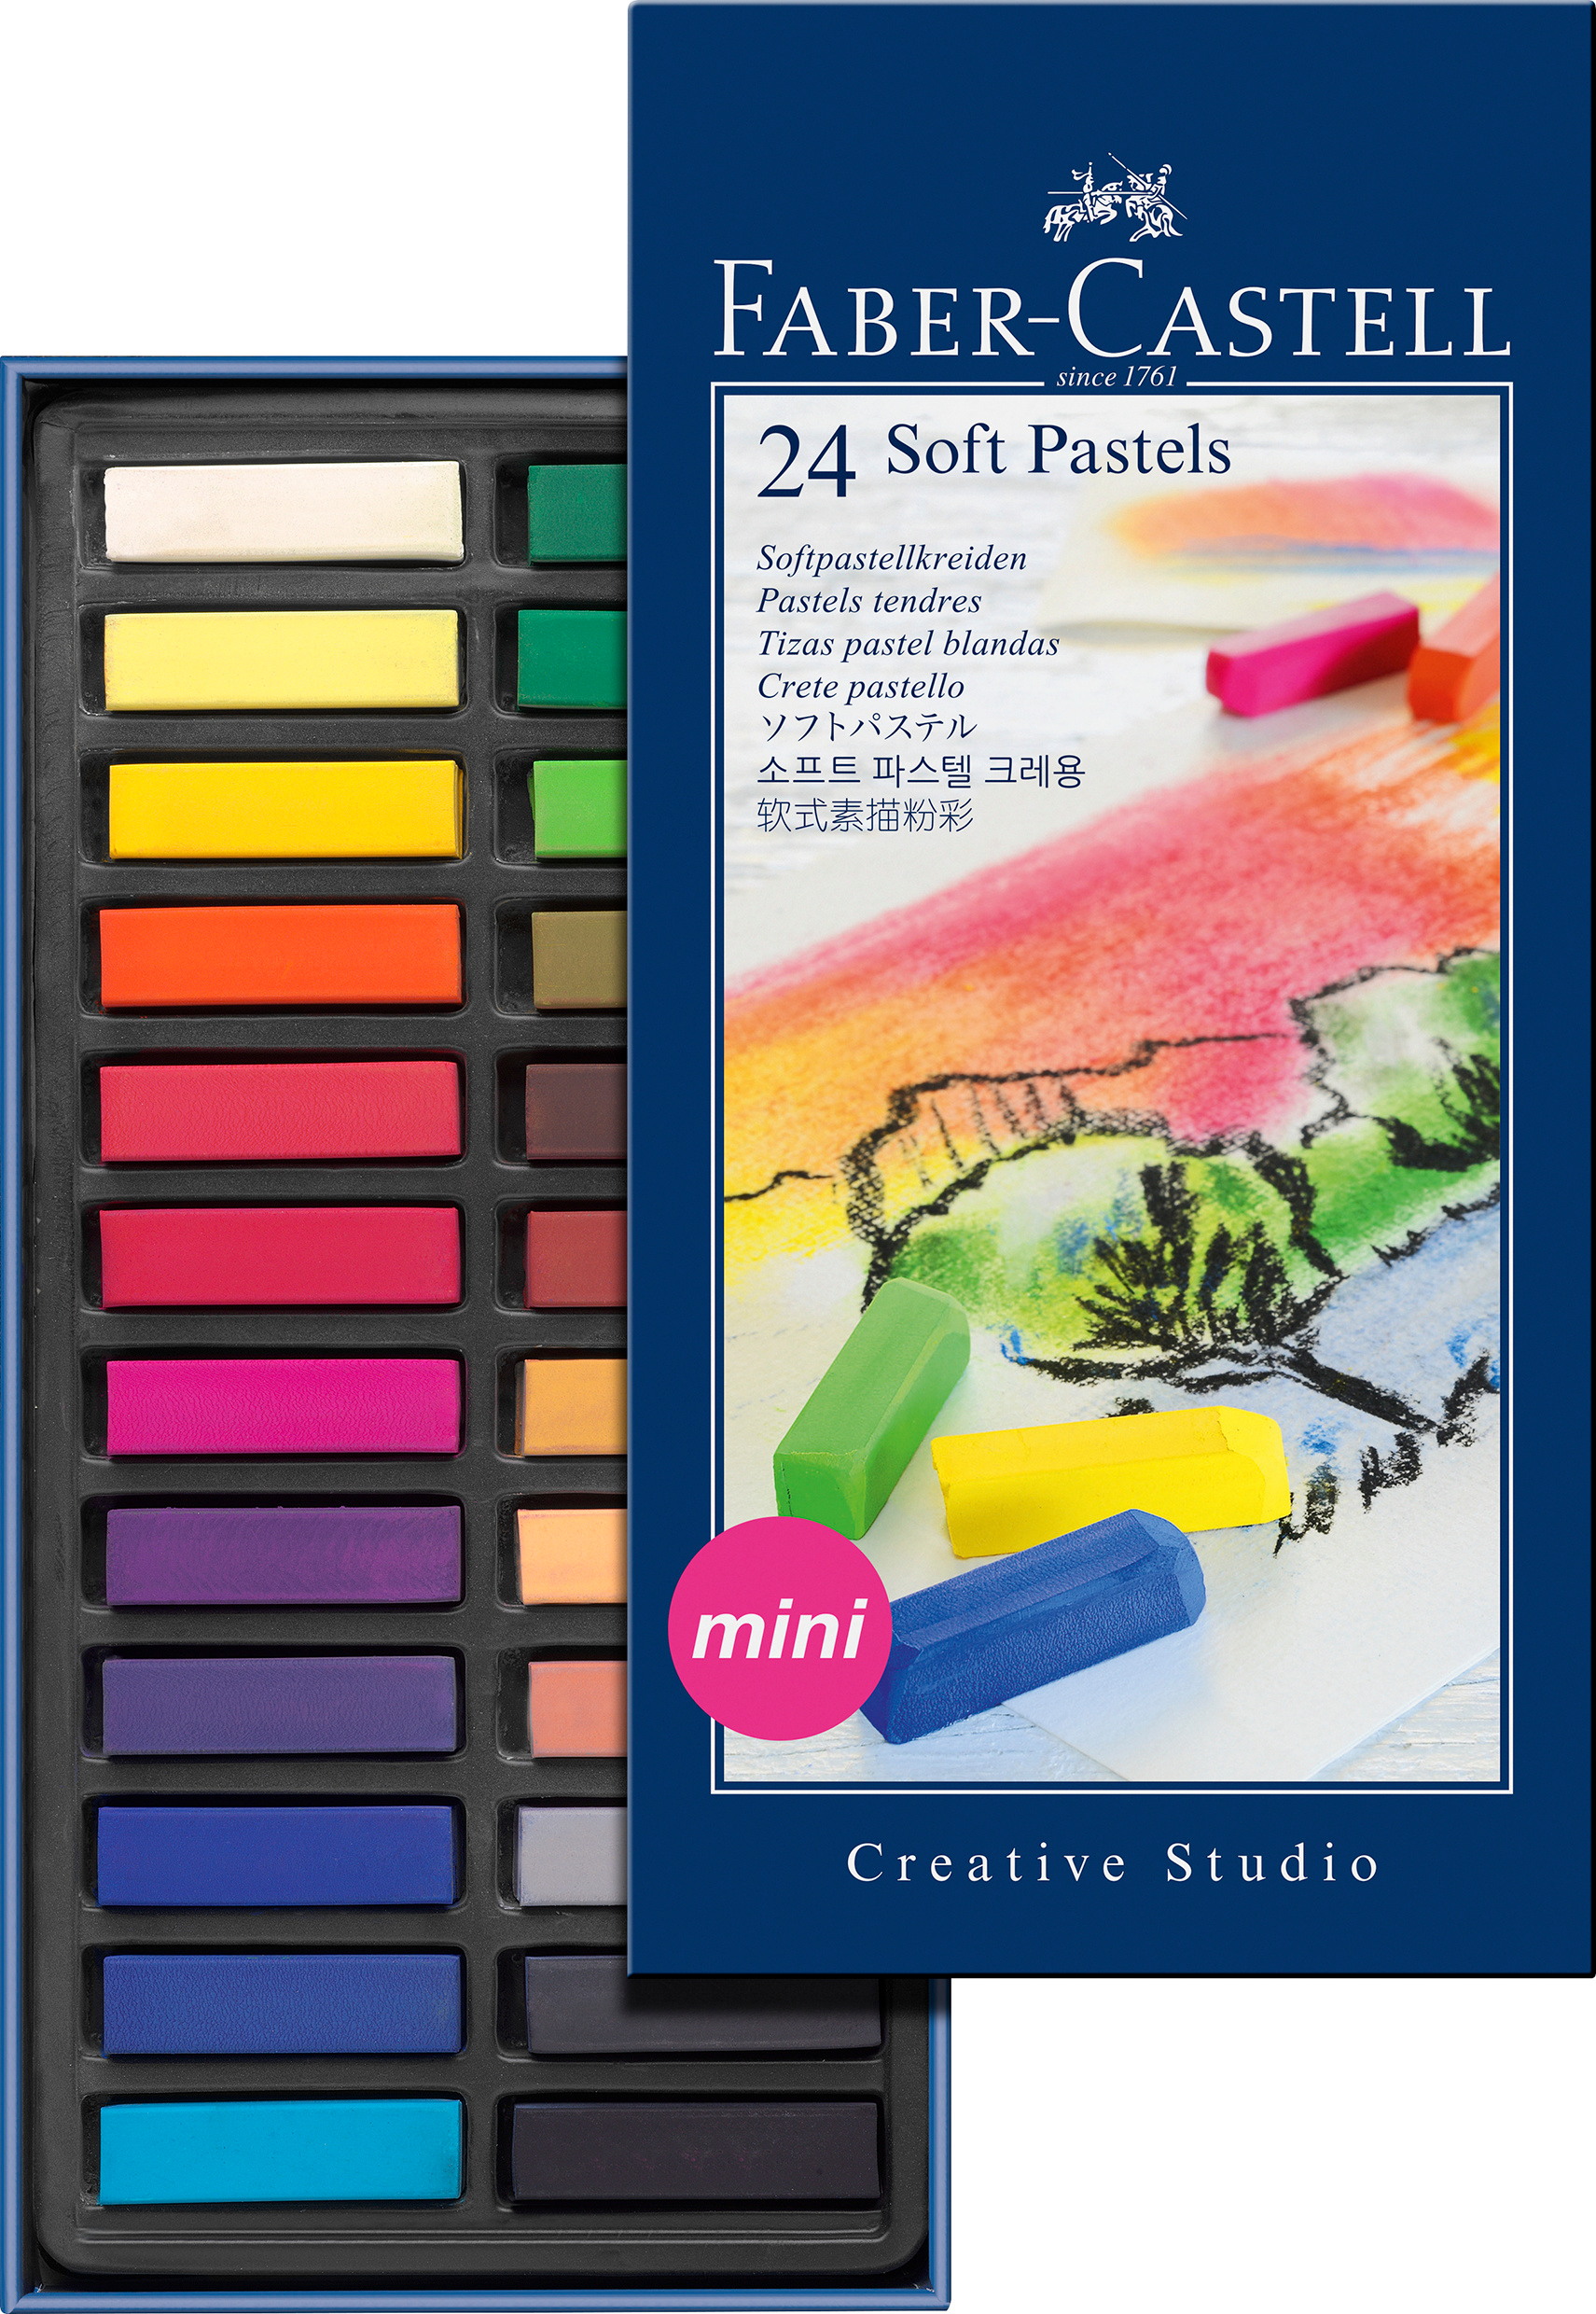 FABER-CASTELL craies pastels Mini 128224 boîte en carton à 24 pce